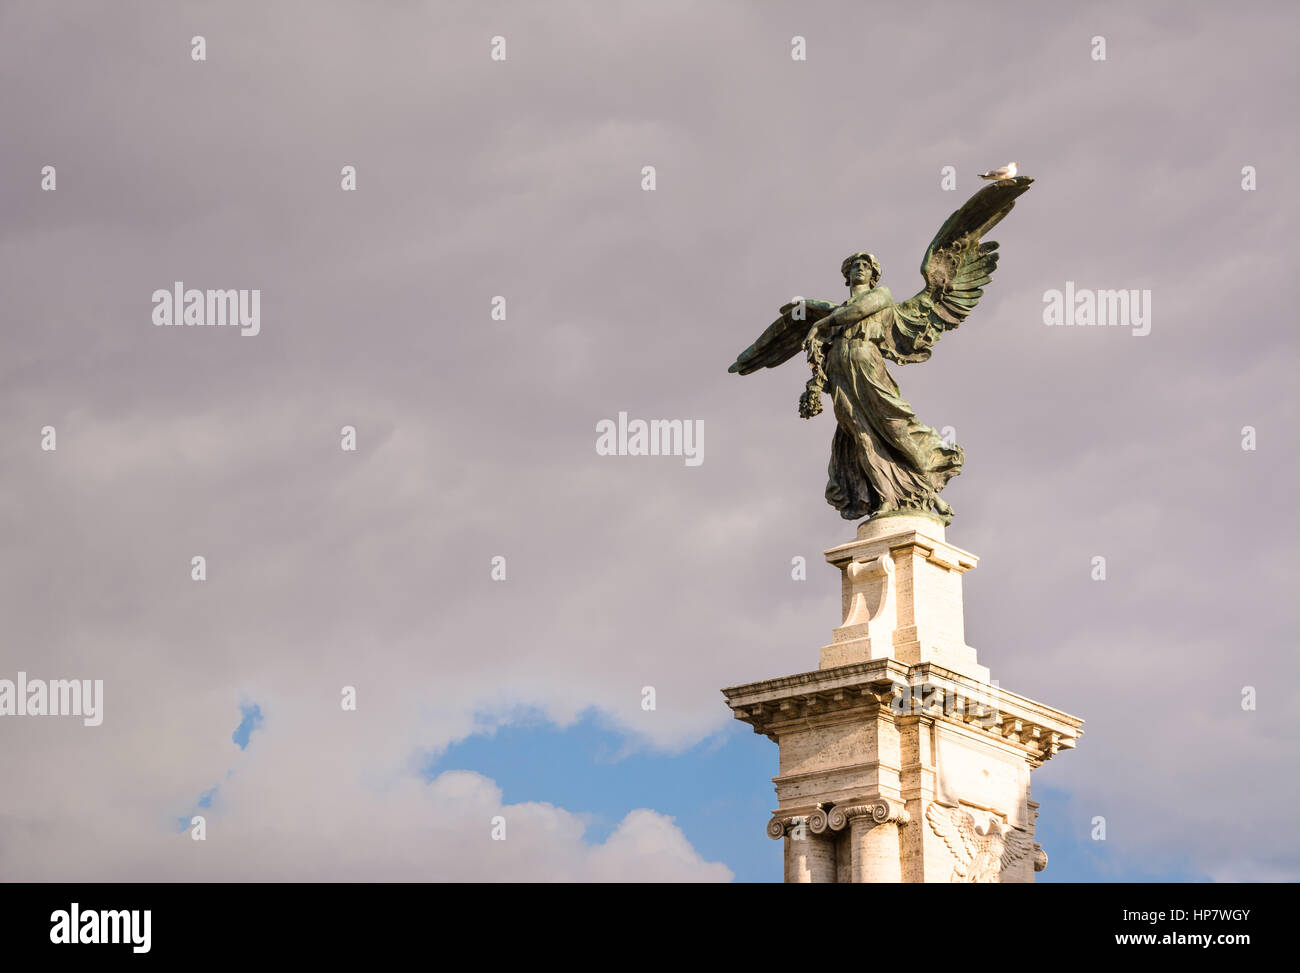 Storica statua romana in Roma centro città. Foto Stock